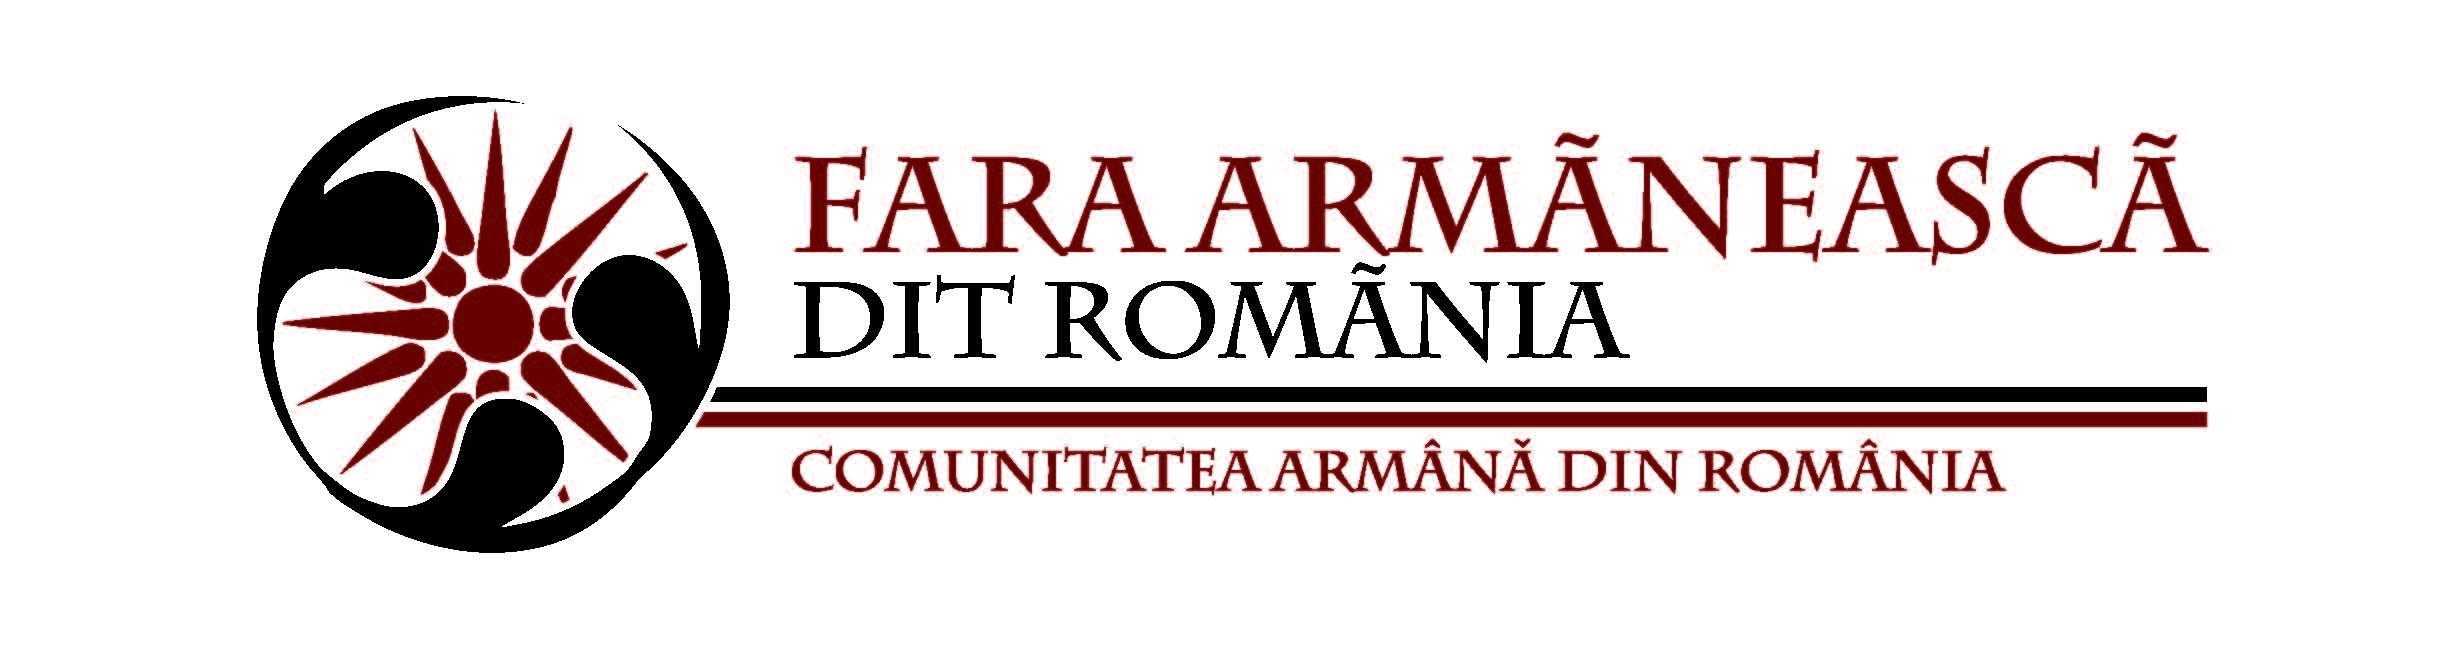 COMUNITATEA ARMÂNĂ DIN ROMÂNIA   logo